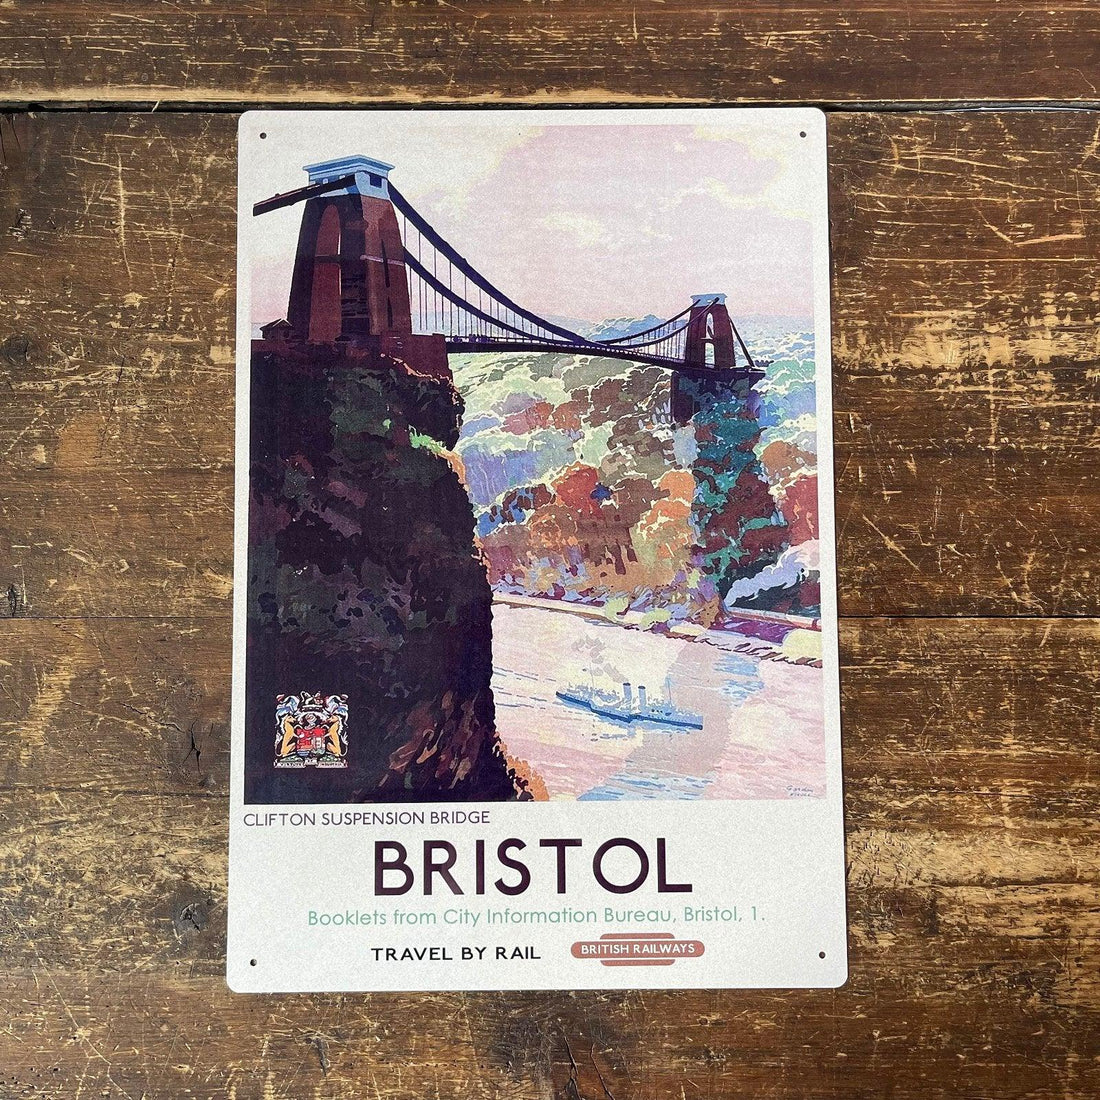 Vintage Metal Sign - British Railways Retro Advertising, Bristol Clifton Suspension Bridge - £27.99 - Retro Advertising 